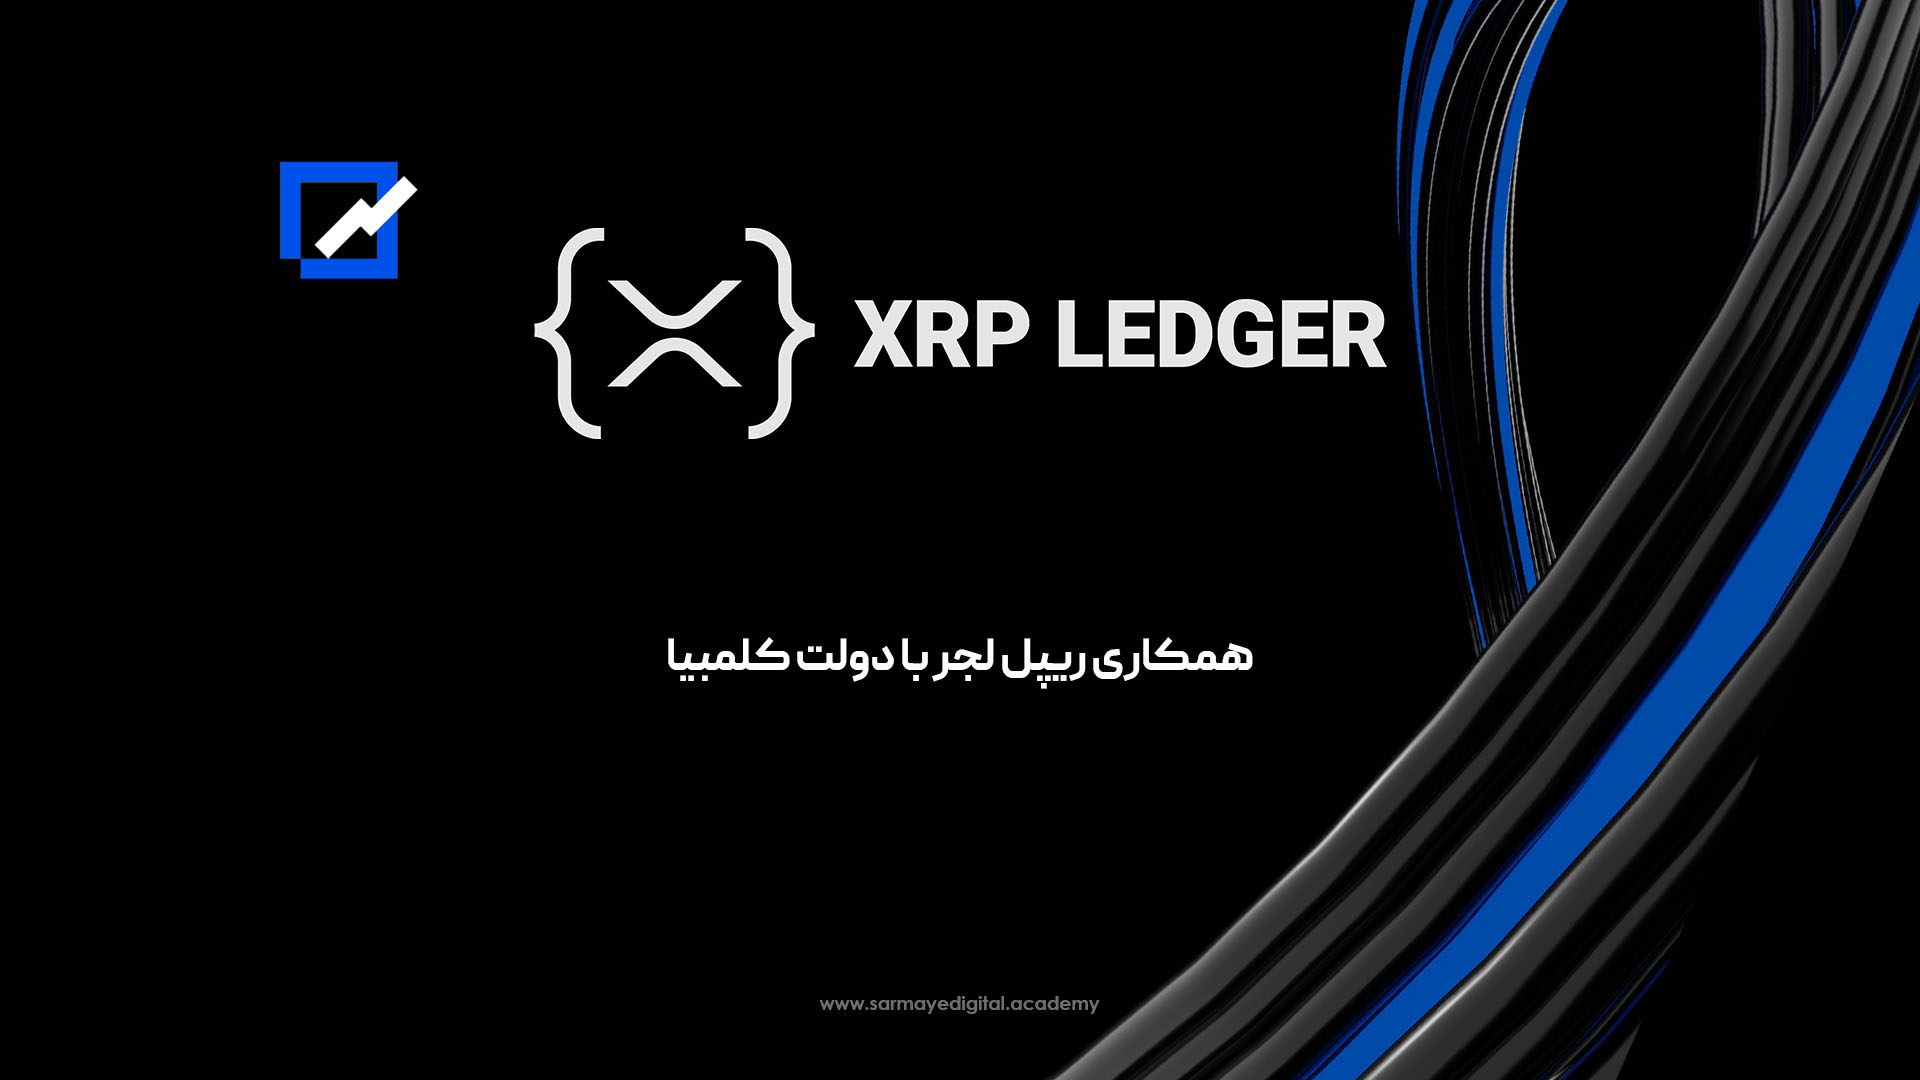 ریپل لجر (XRP Ledger)